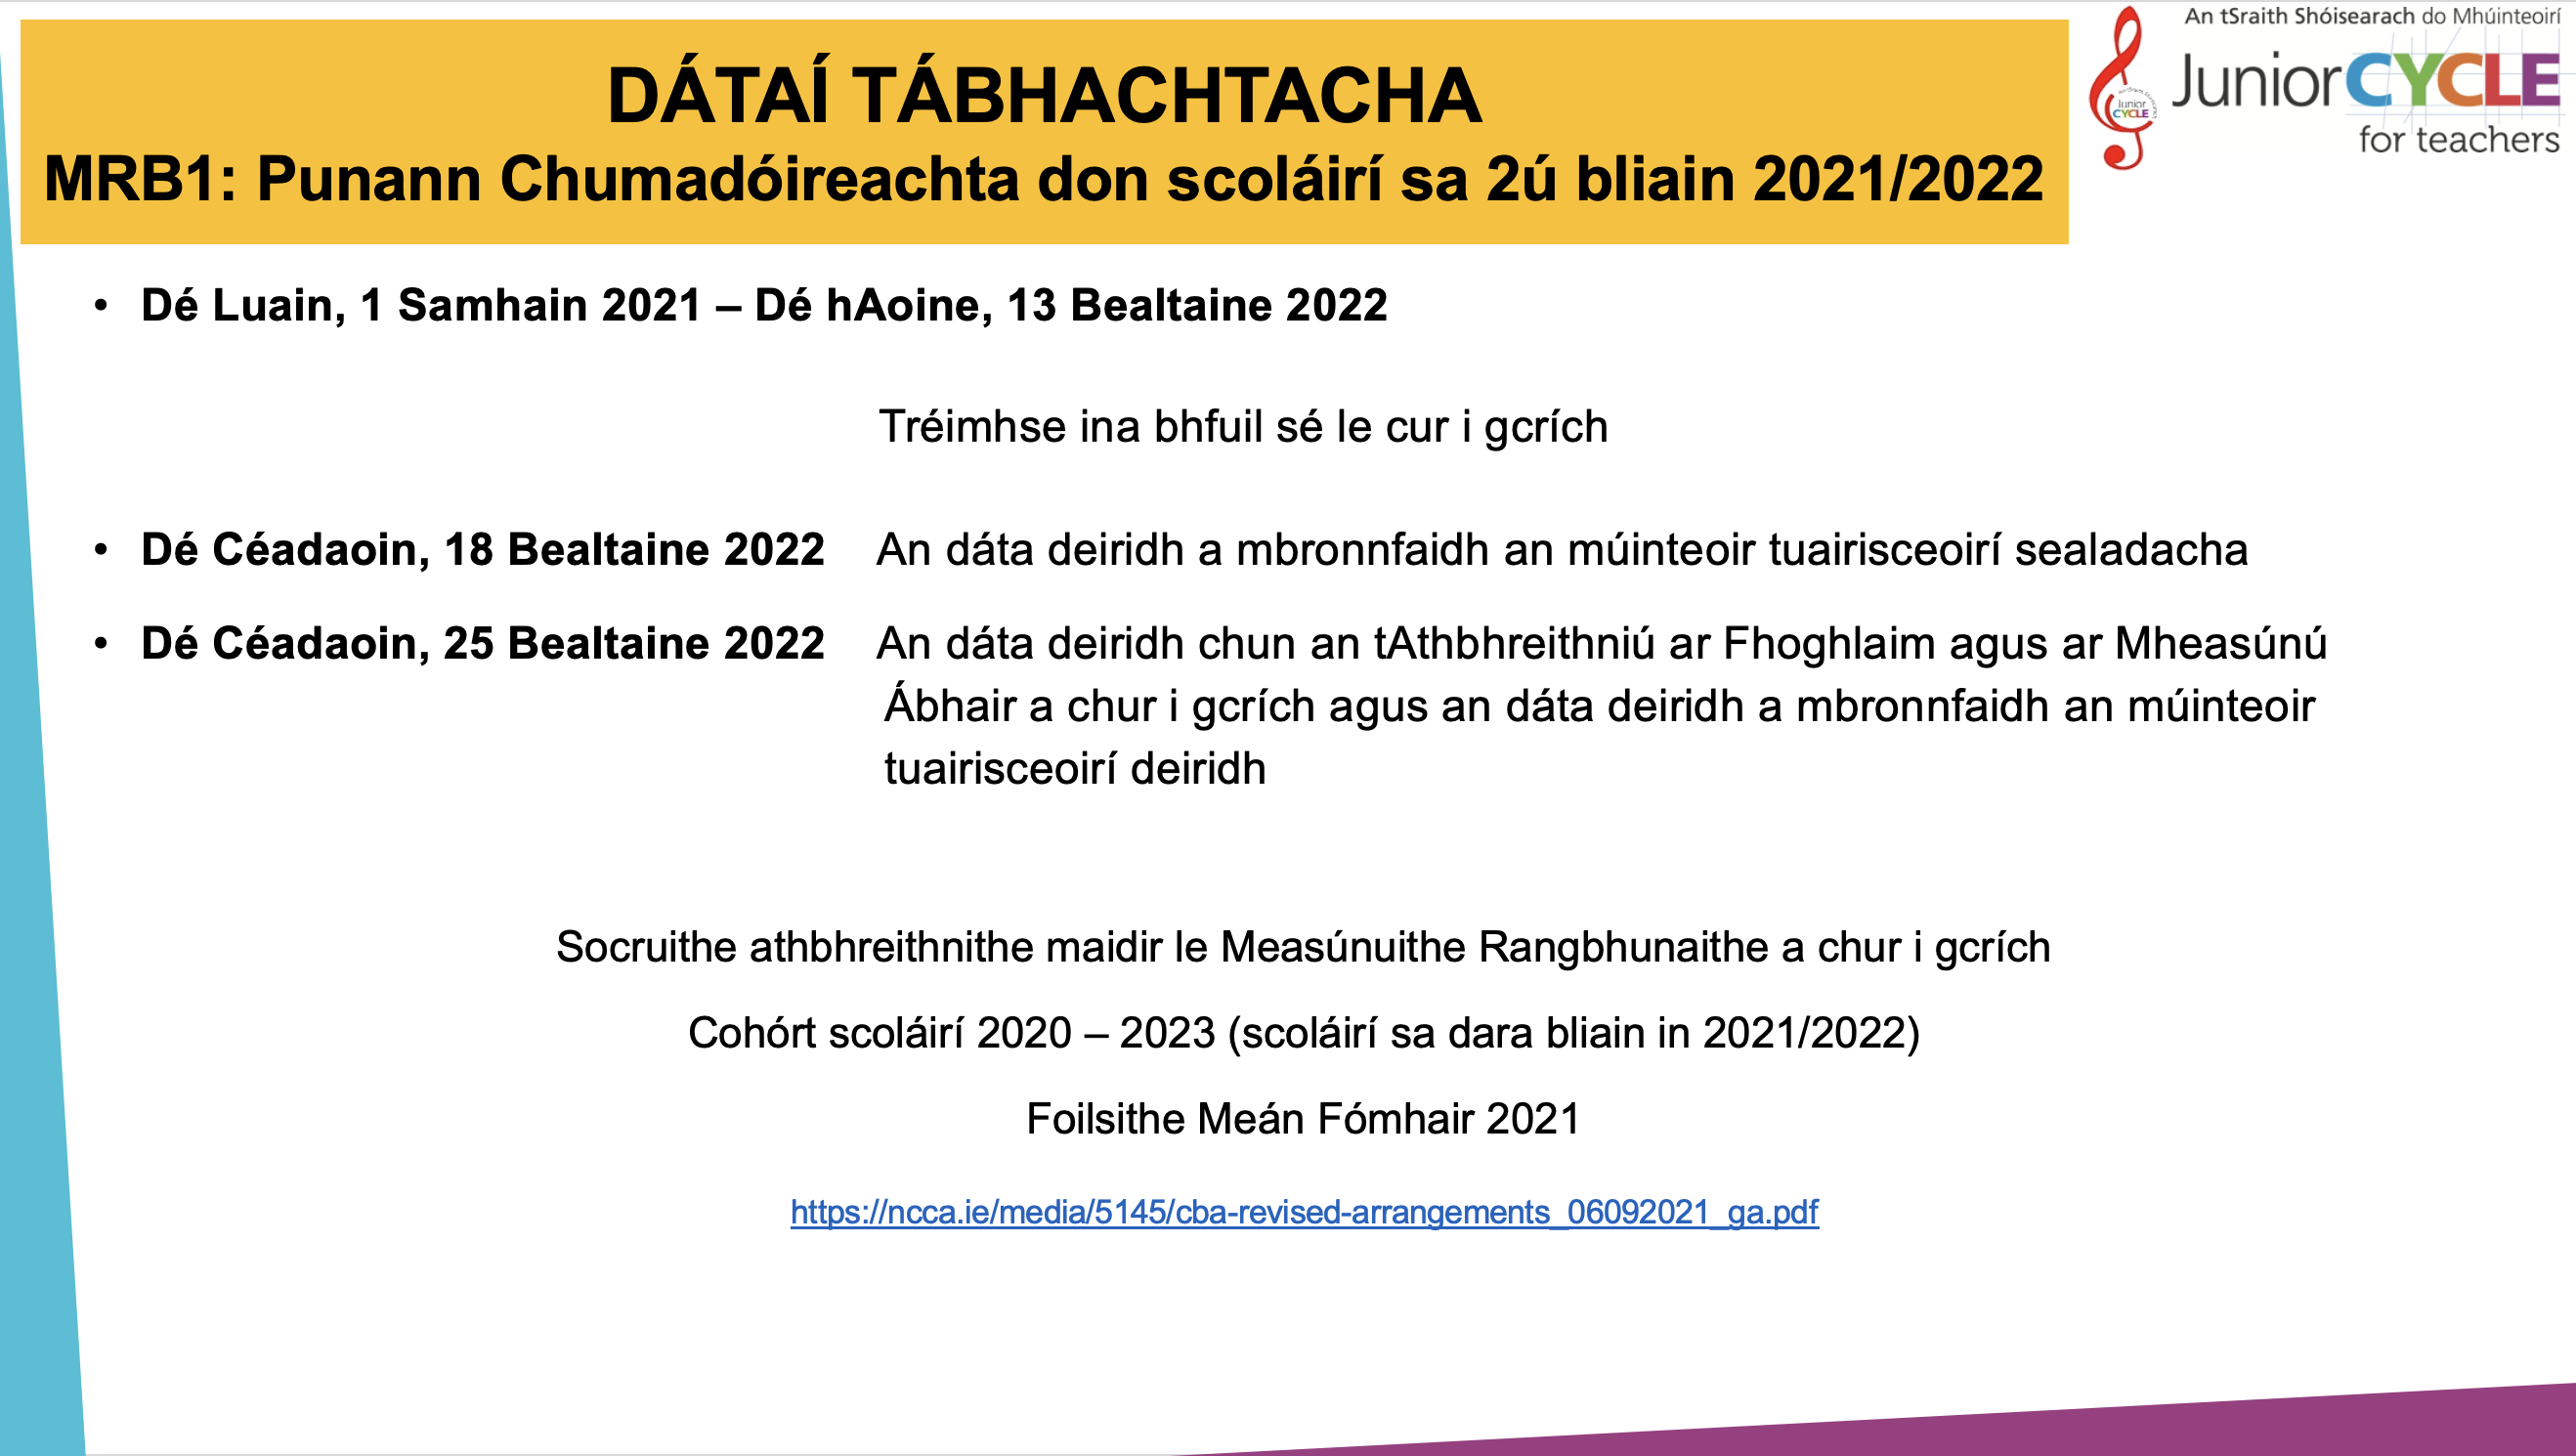 MRB1: Punann Chumadóireachta don 2ú bliain 2021 - 2022